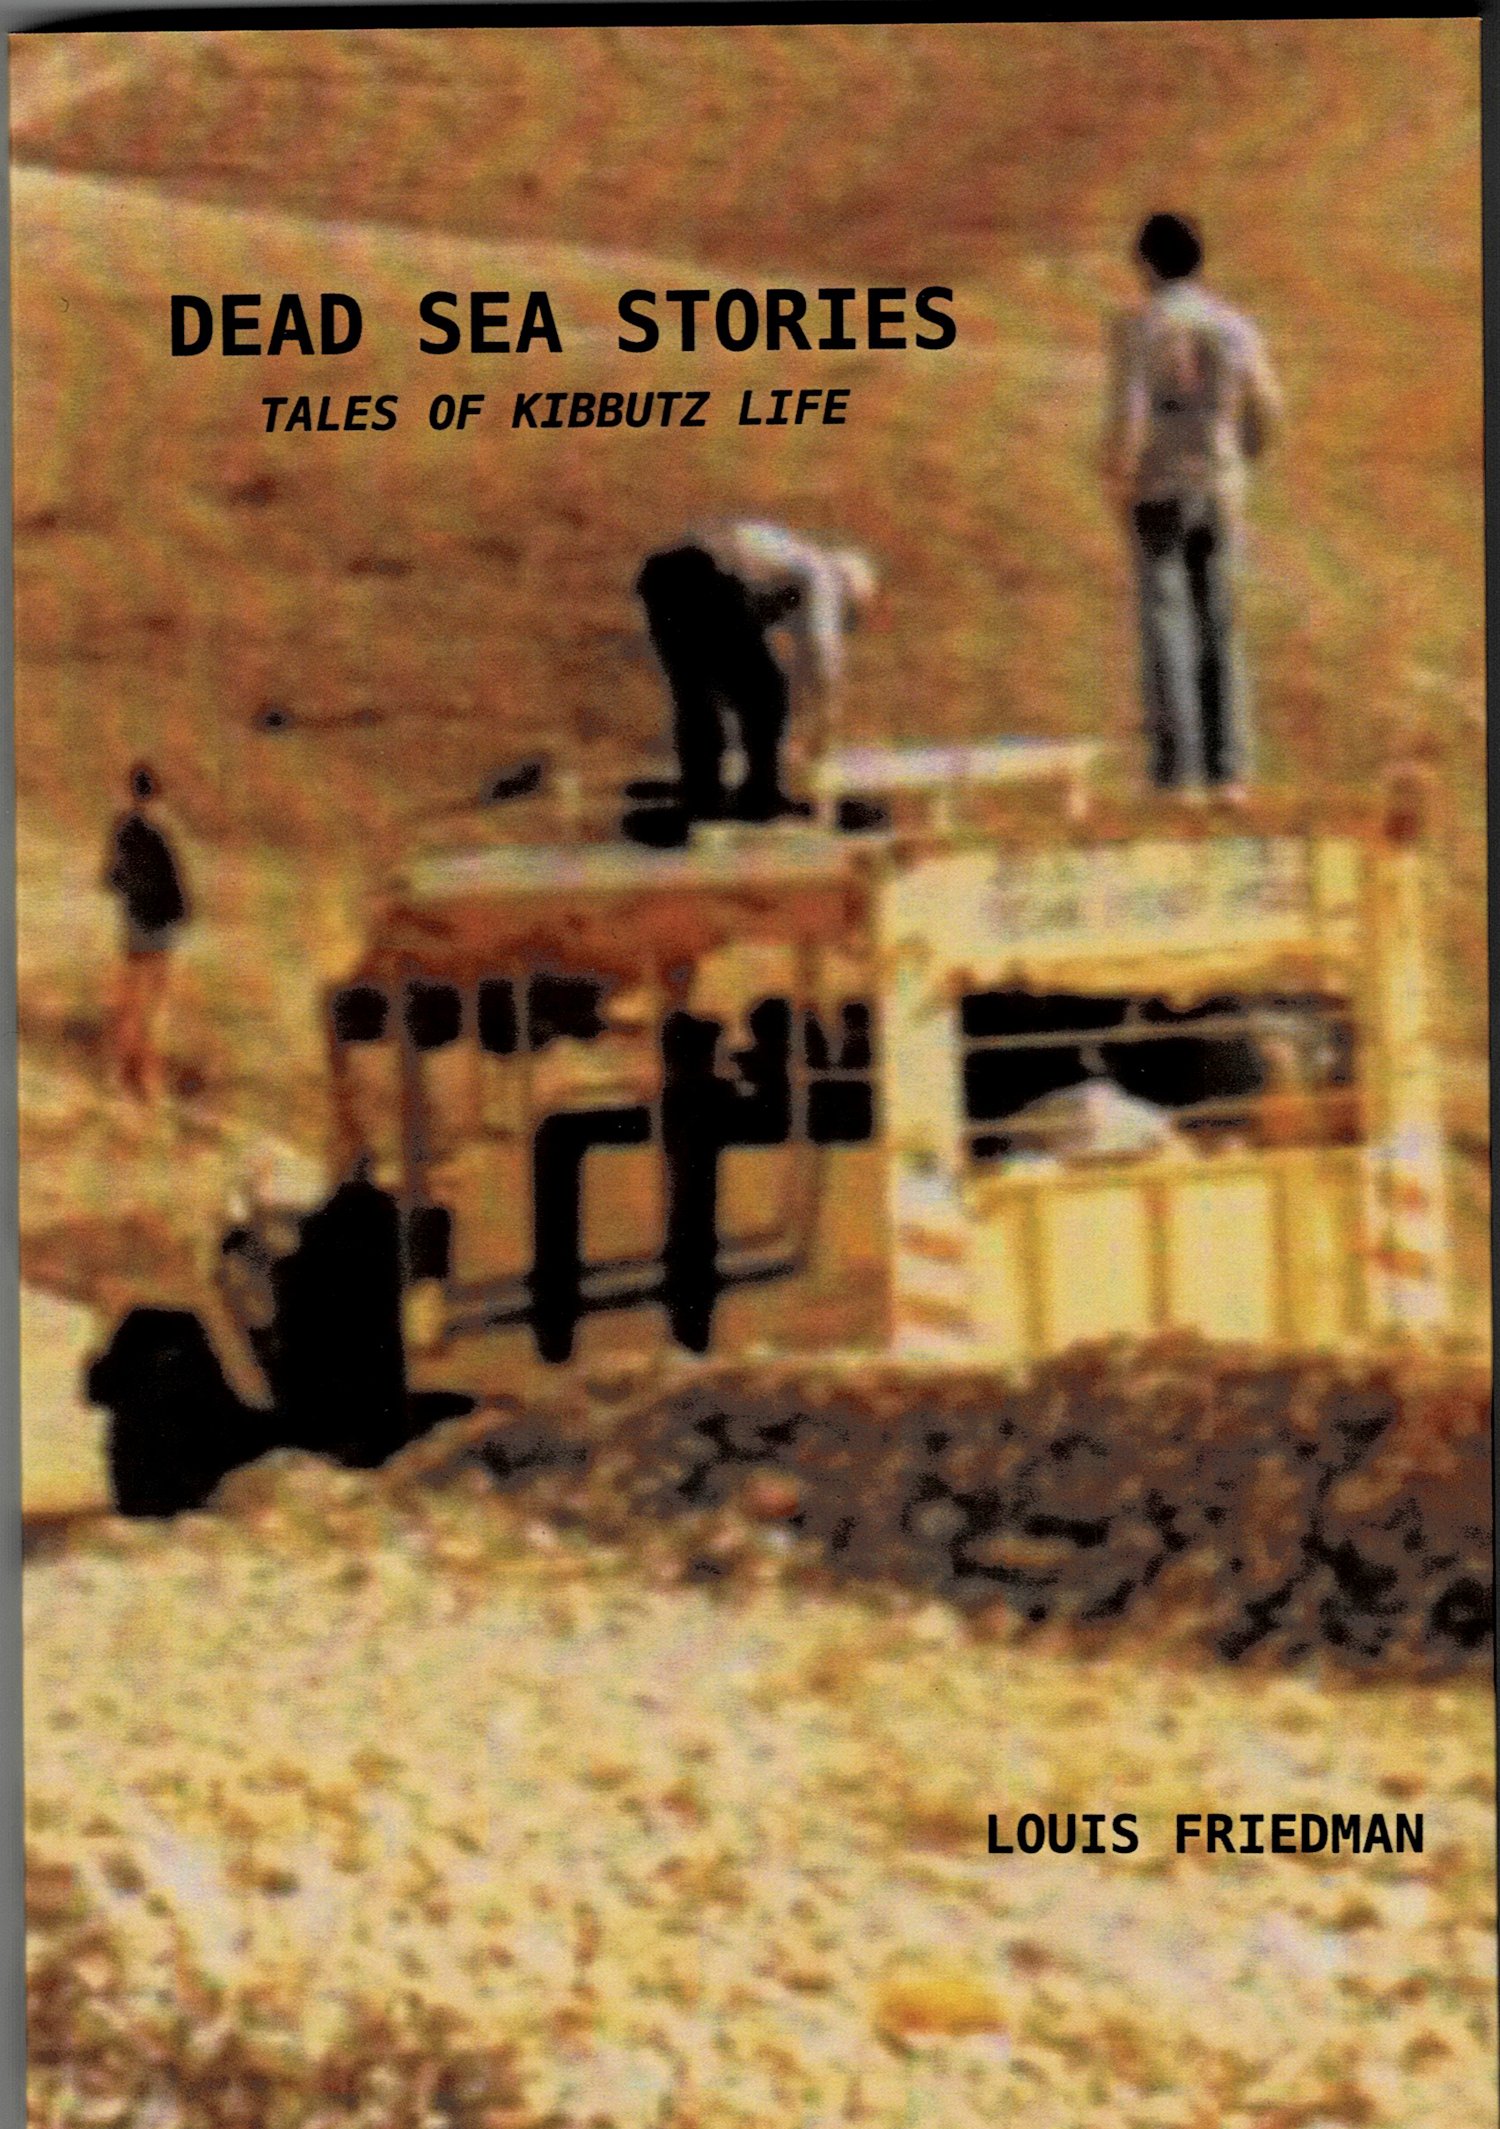 Image of Dead Sea Stories : Tales of Kibbutz Life, by Louis Friedman